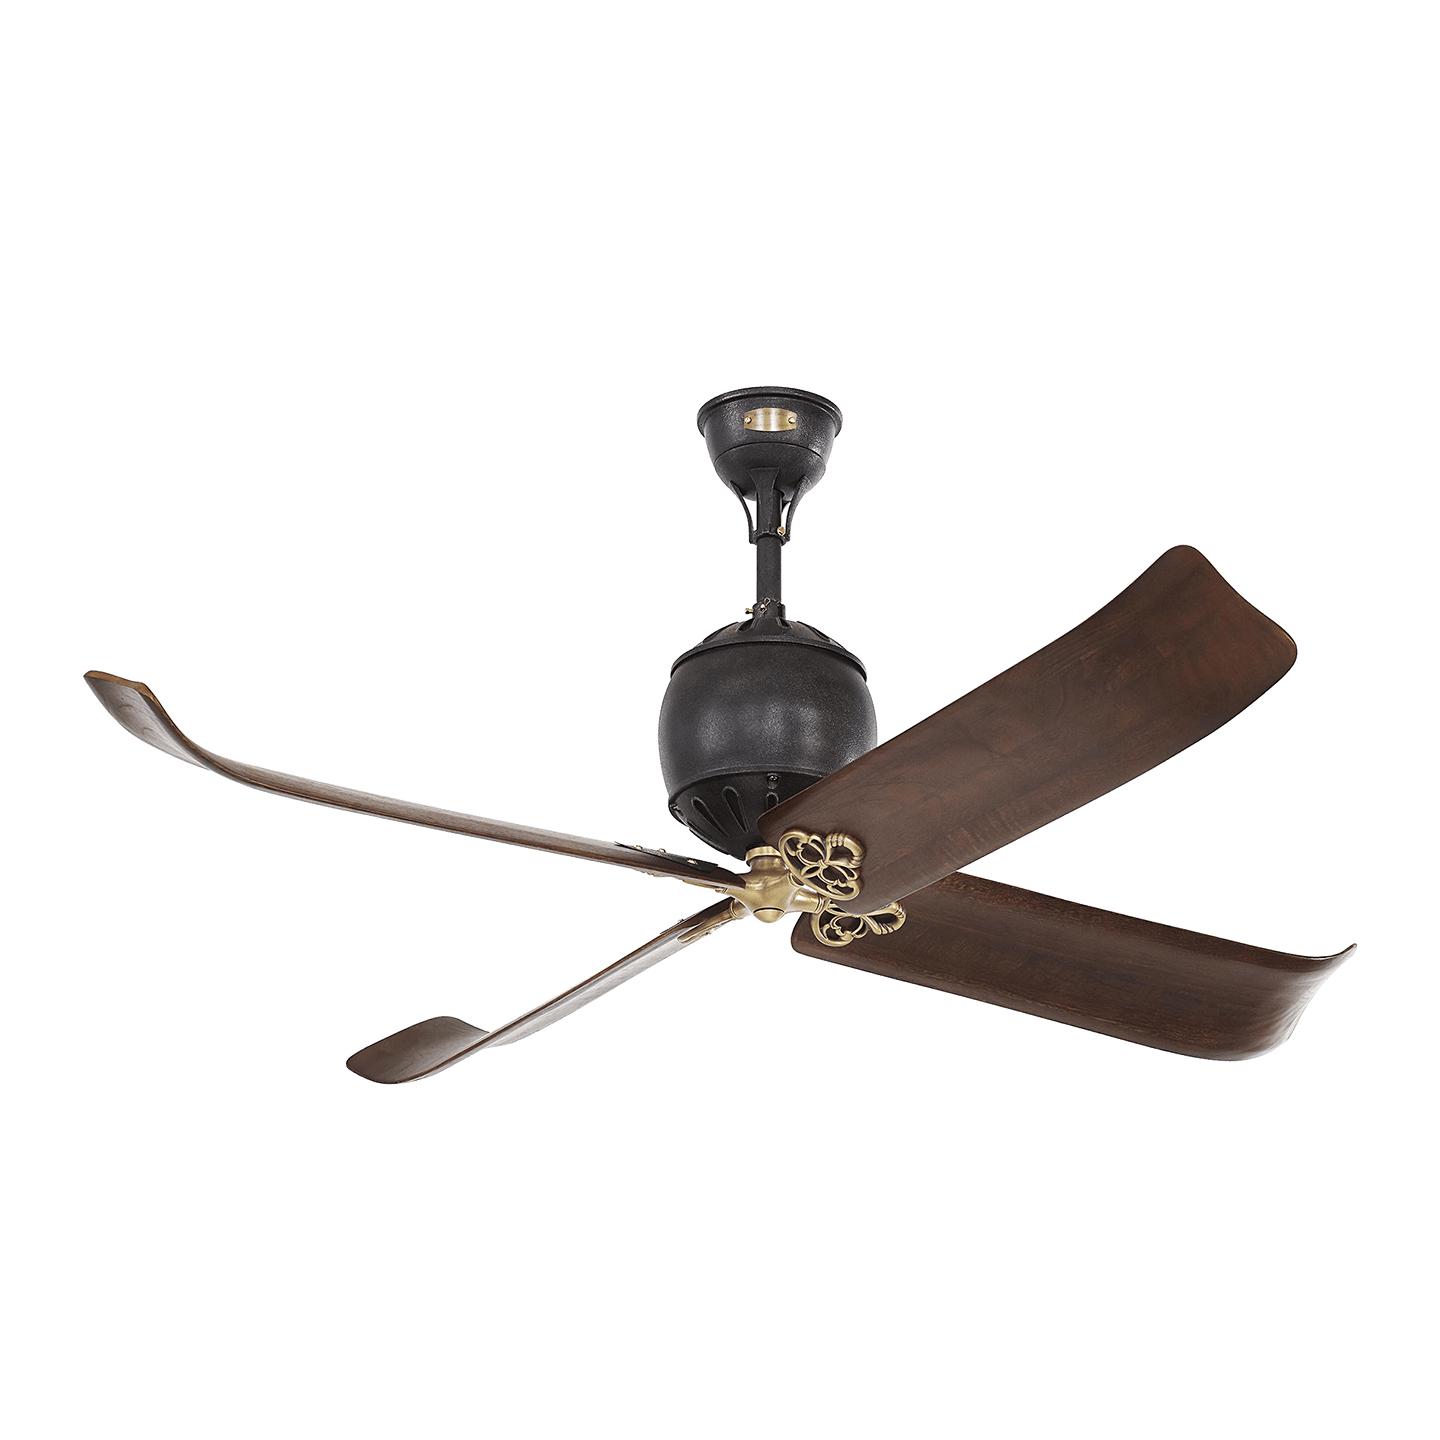 Купить Потолочный вентилятор Giarre 60" Ceiling Fan в интернет-магазине roooms.ru